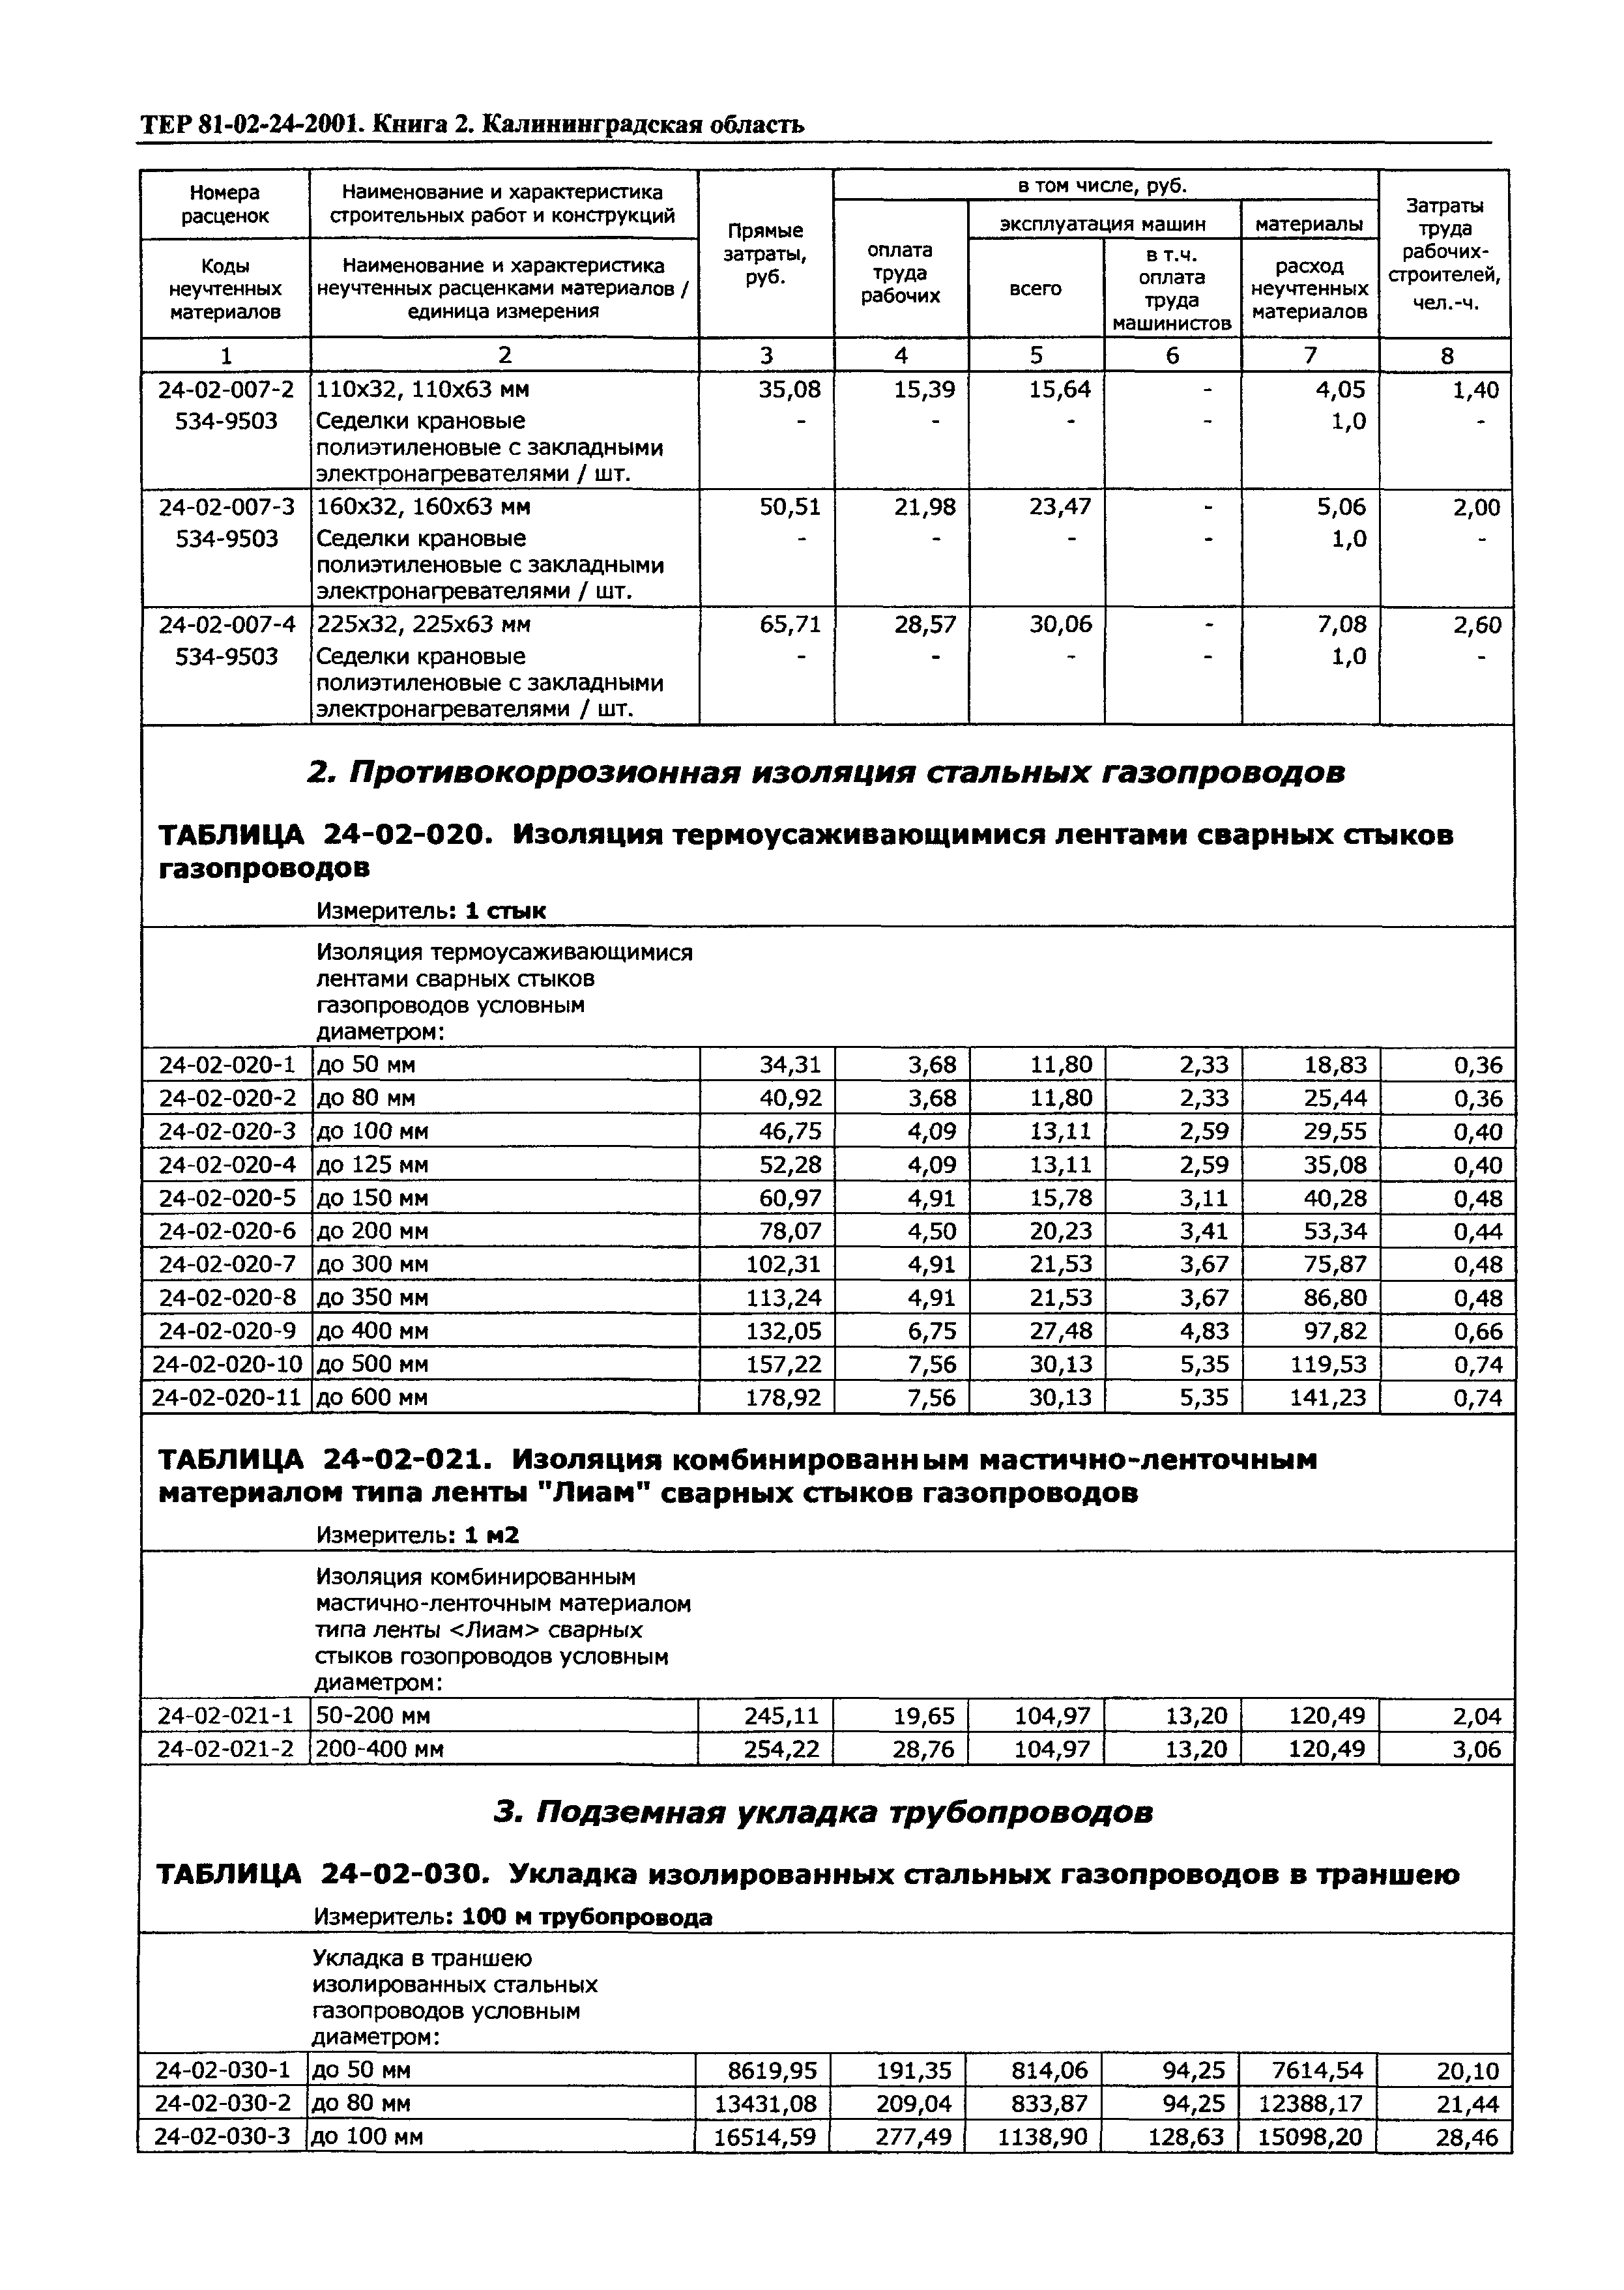 ТЕР Калининградской области 2001-24